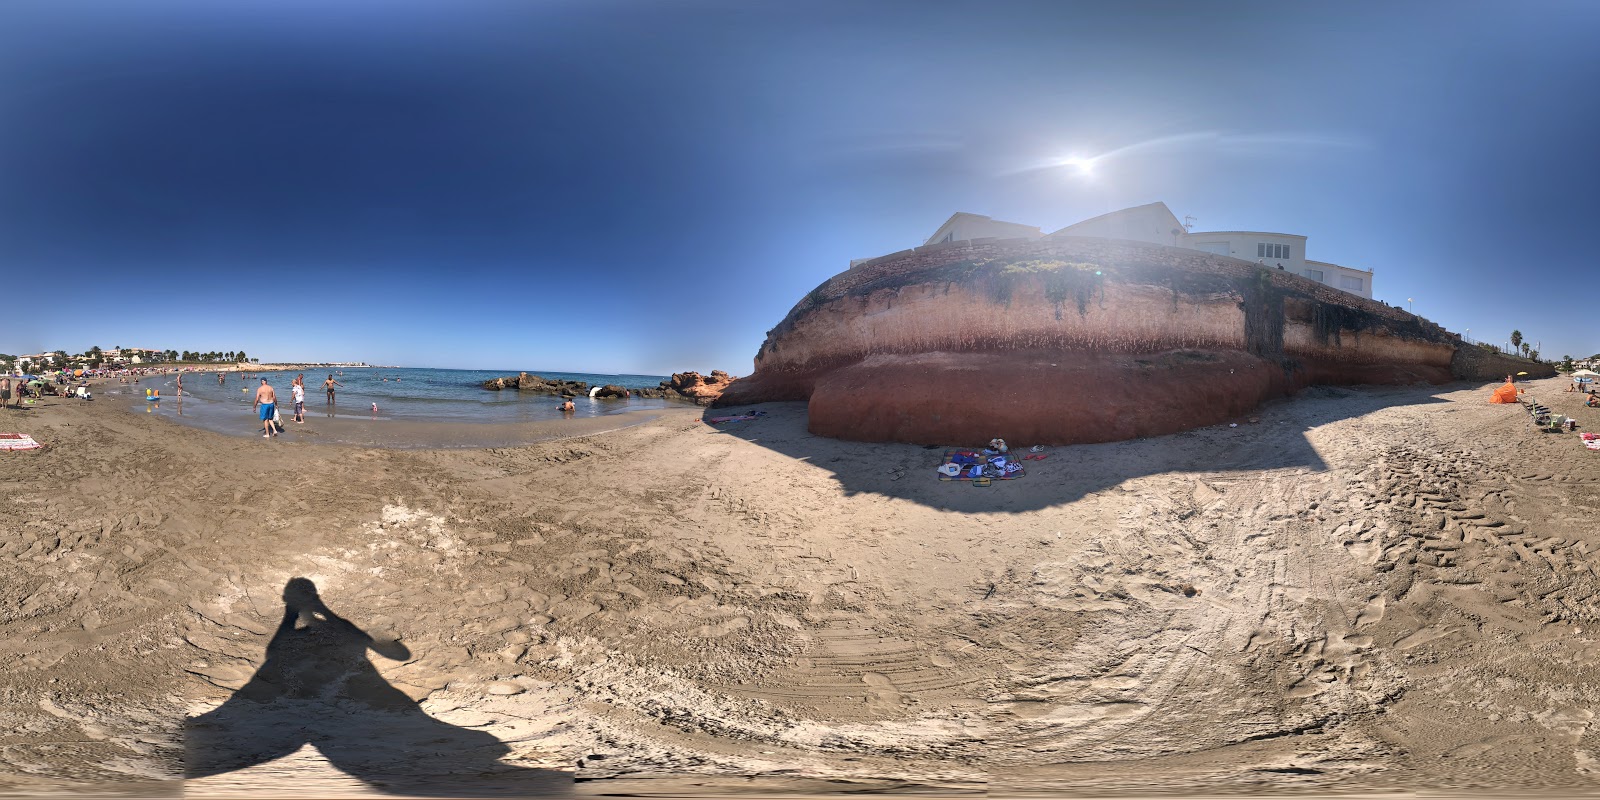 Flamenca Plajı'in fotoğrafı kahverengi kum yüzey ile